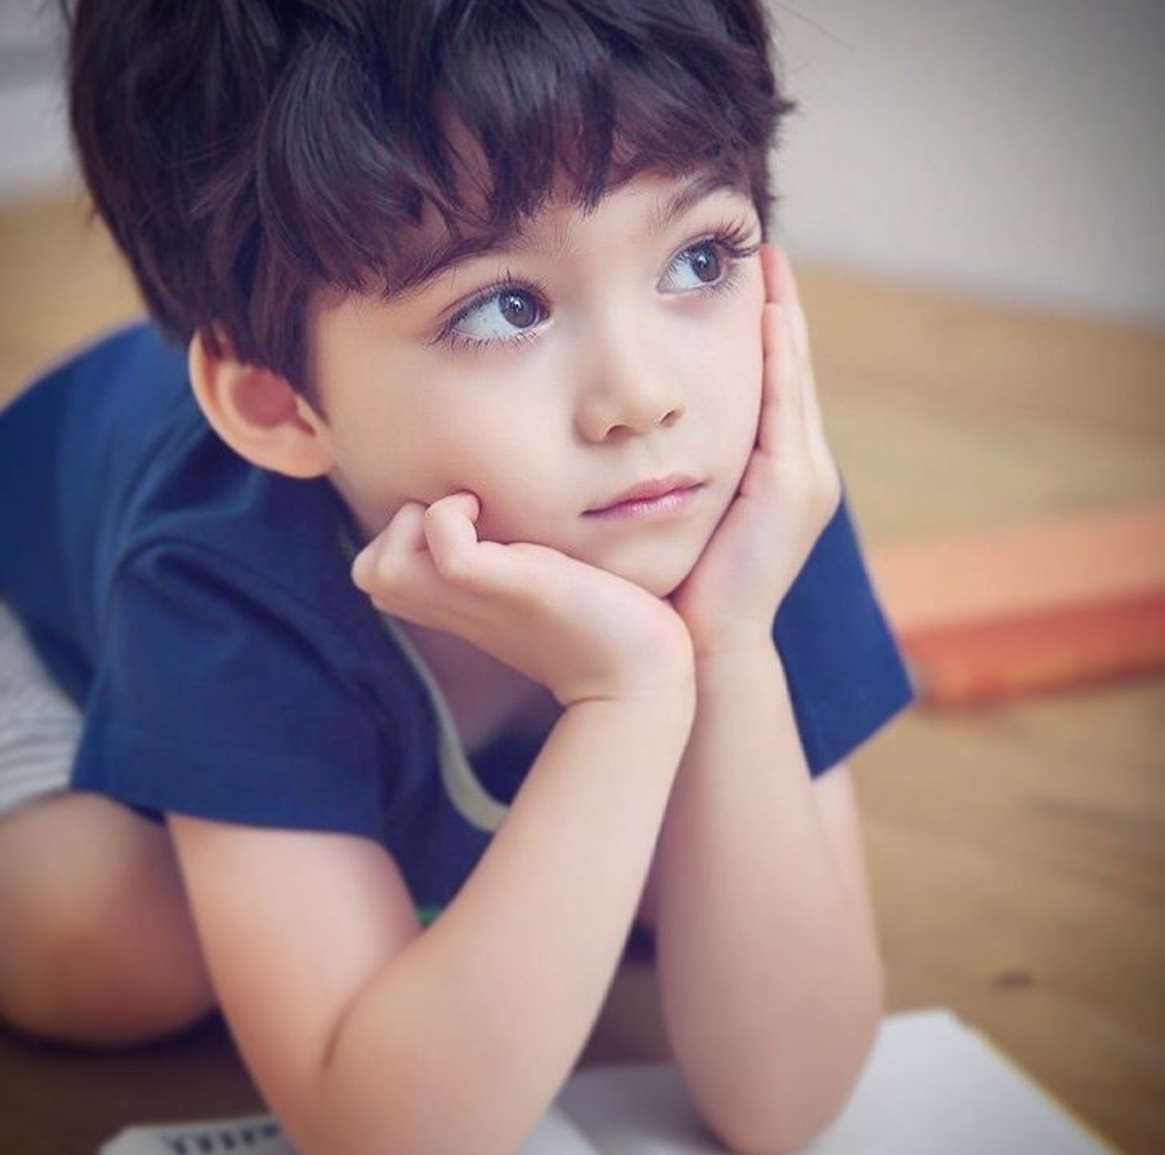 Cooper - Cậu bé 4 tuổi được mệnh danh đẹp trai nhất thế giới